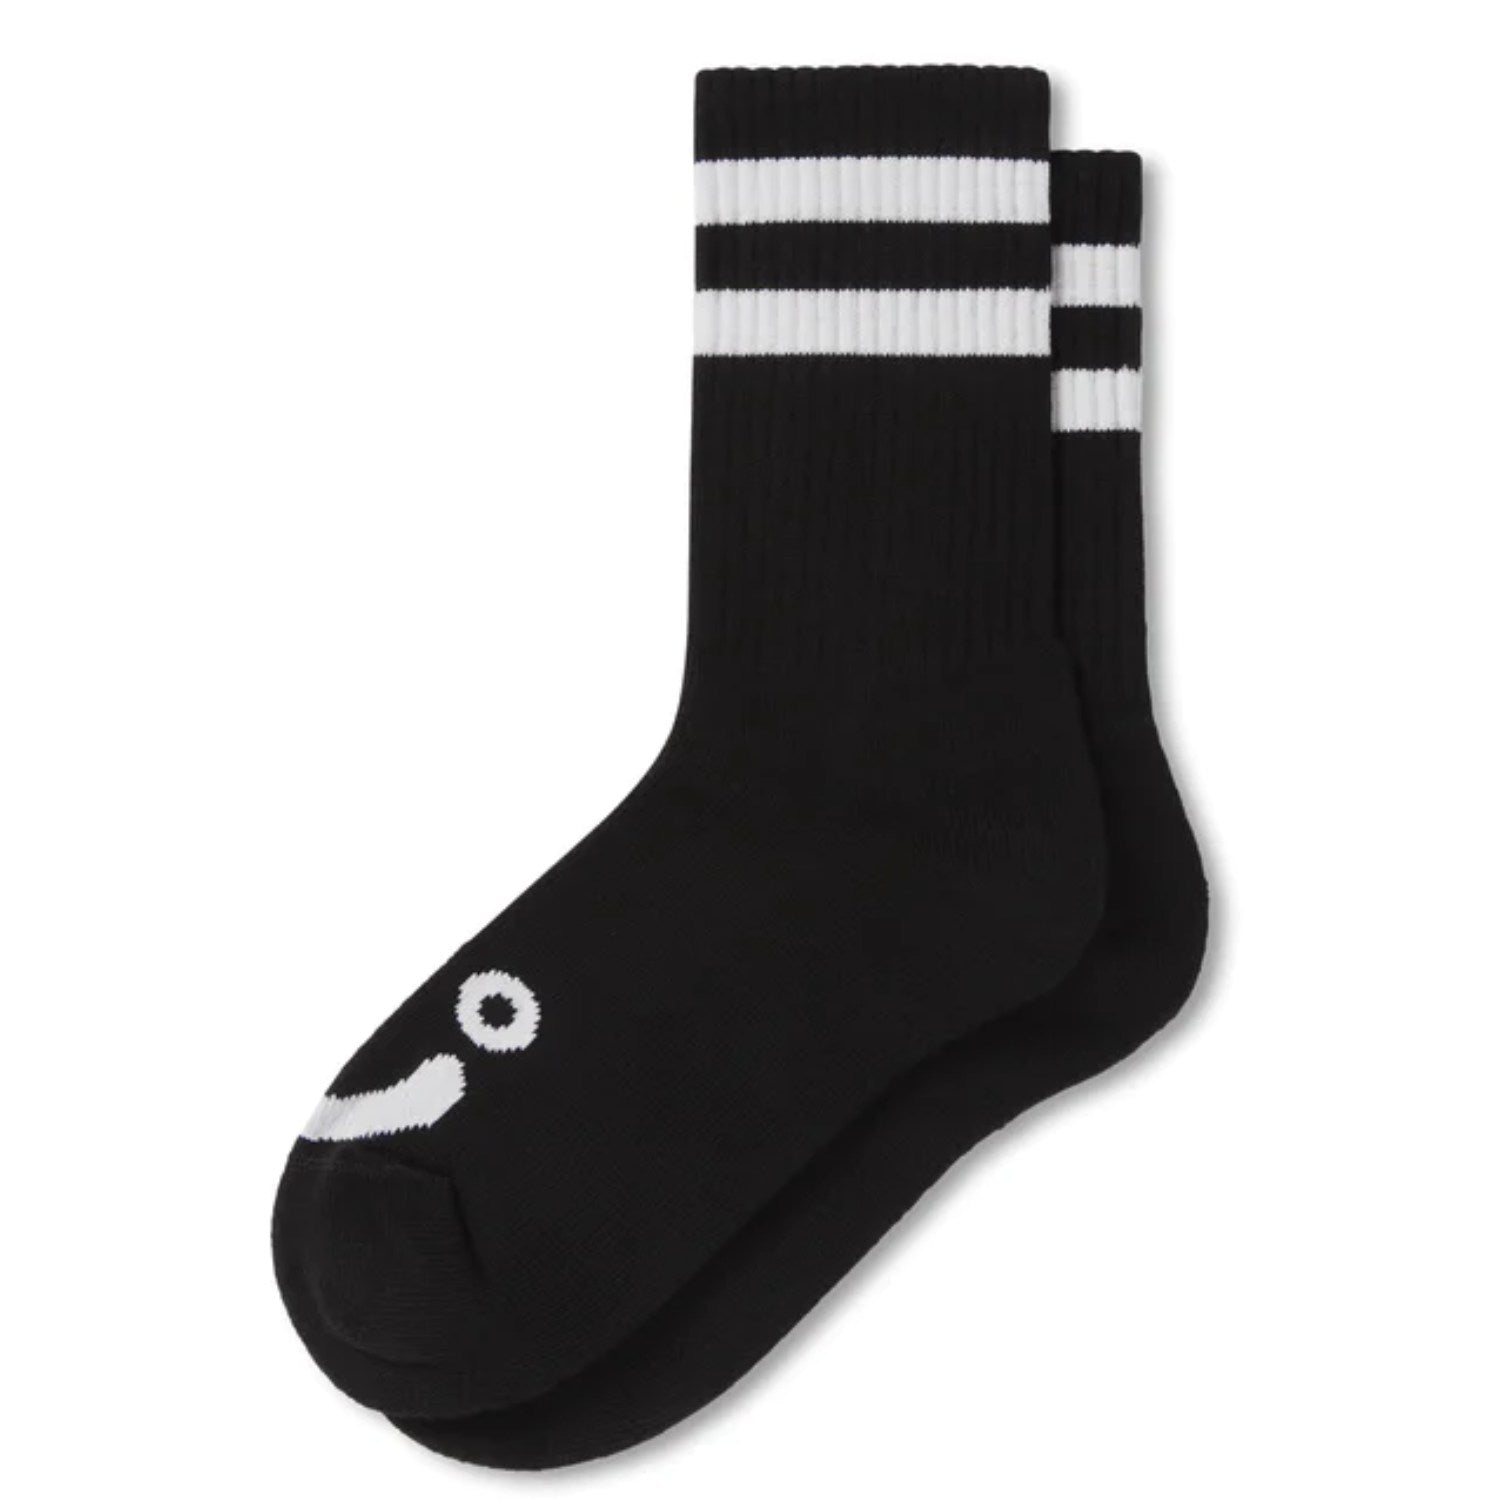 Polar - Happy Sad Rib Socks - Black